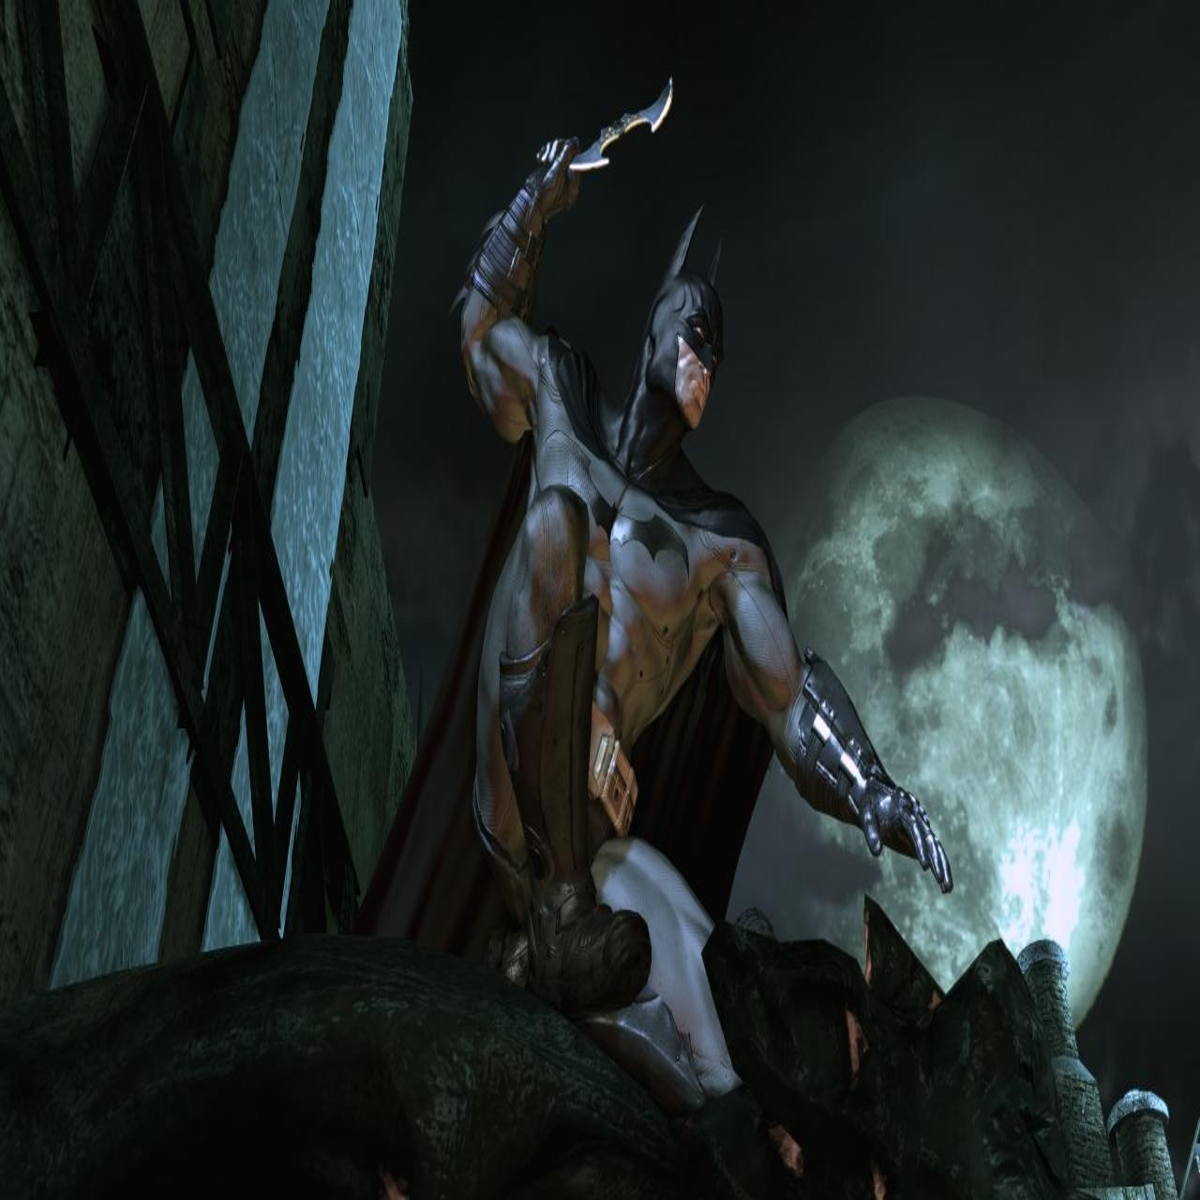 How to Fix Batman: Arkham Asylum's WORST Boss